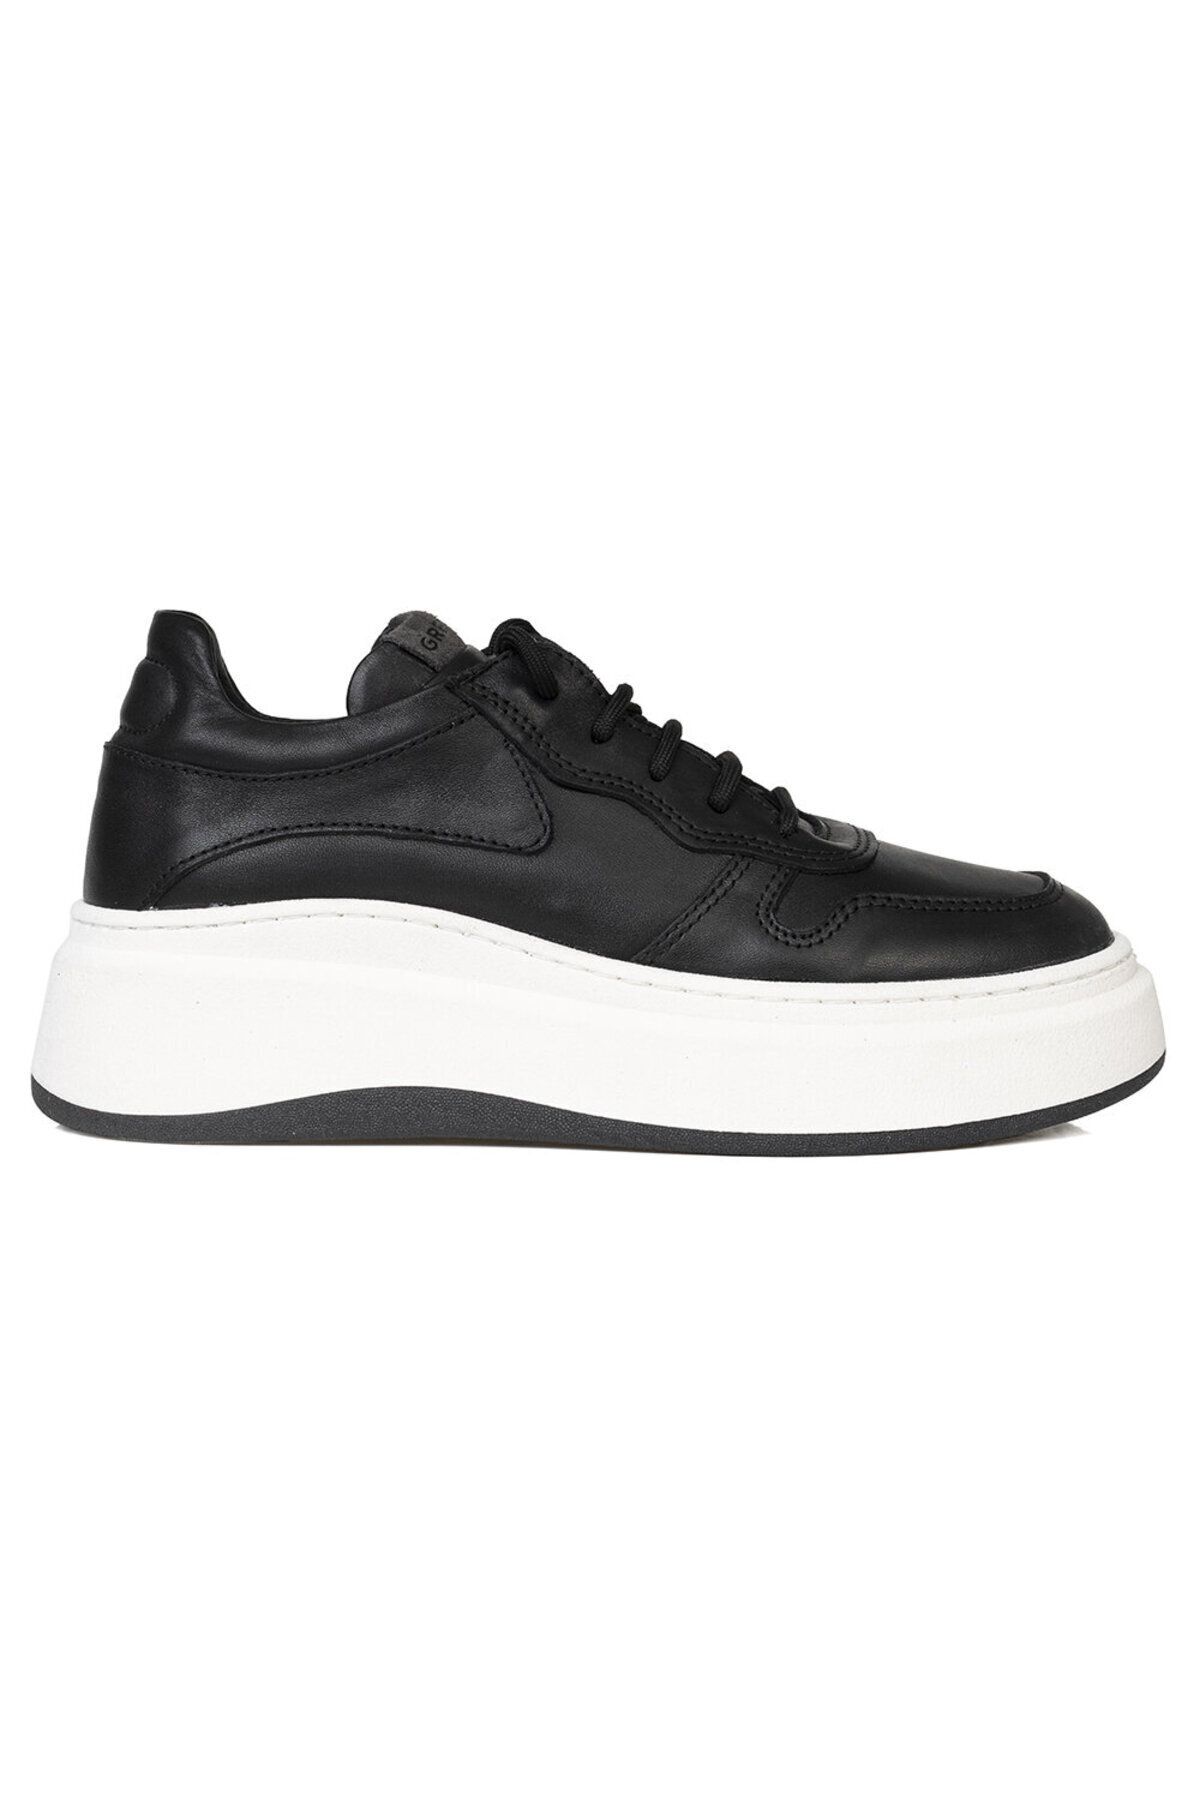 Greyder Kadın Siyah Hakiki Deri Sneaker Ayakkabı 3k2sa33120 Fiyatı ...